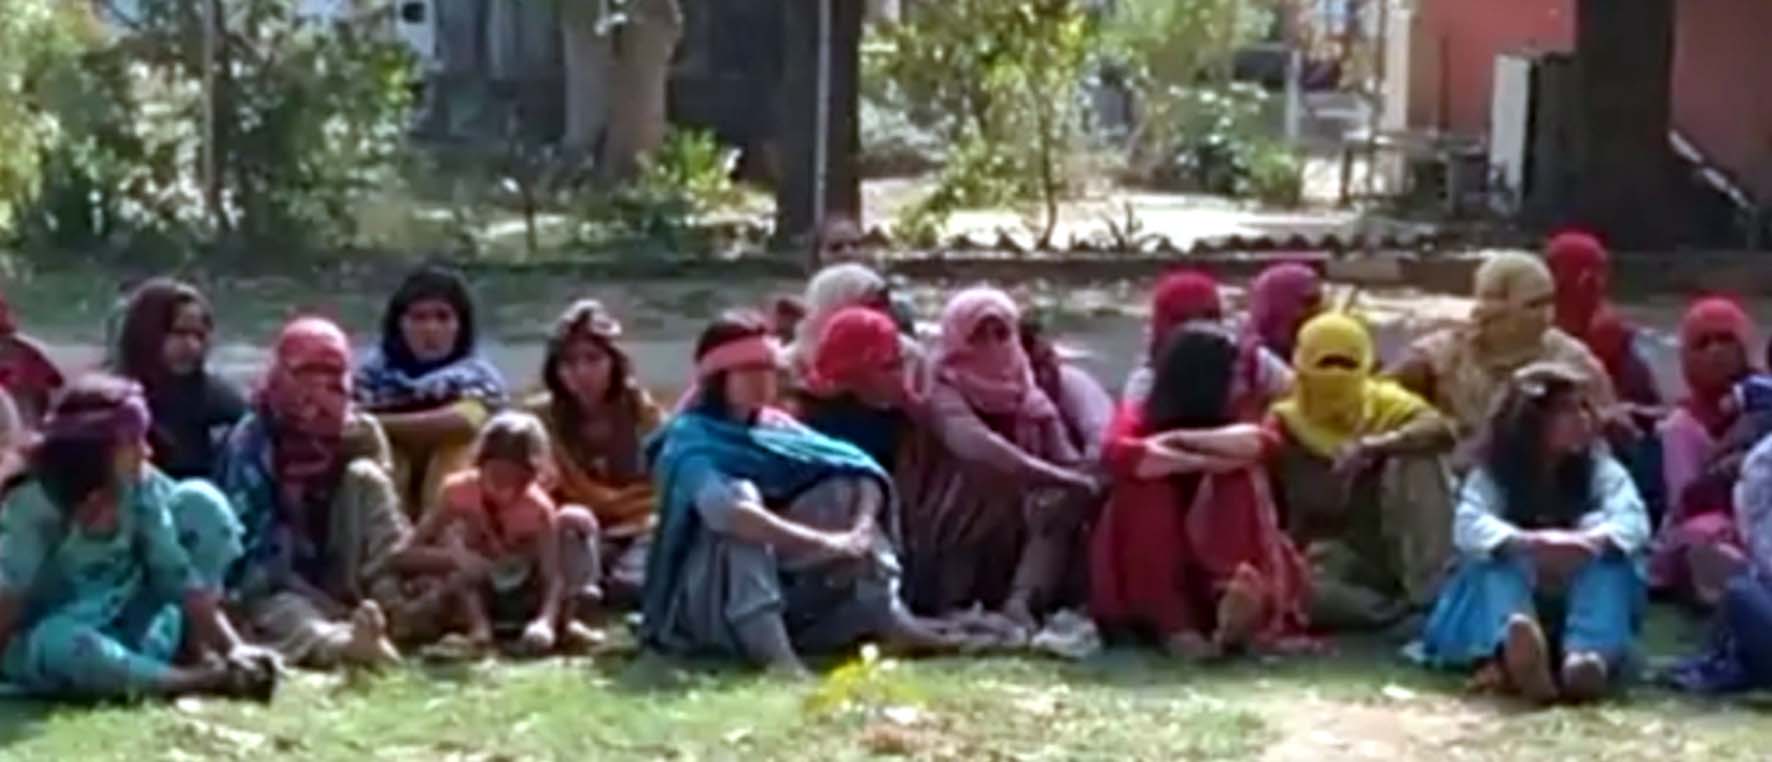 आरोपियों की गिरफ्तारी की मांग को लेकर भाटला पुलिस चौकी पहुंचे ग्रामीण व पुलिस चौकी के समक्ष धरने पर बैठी महिलाएं।